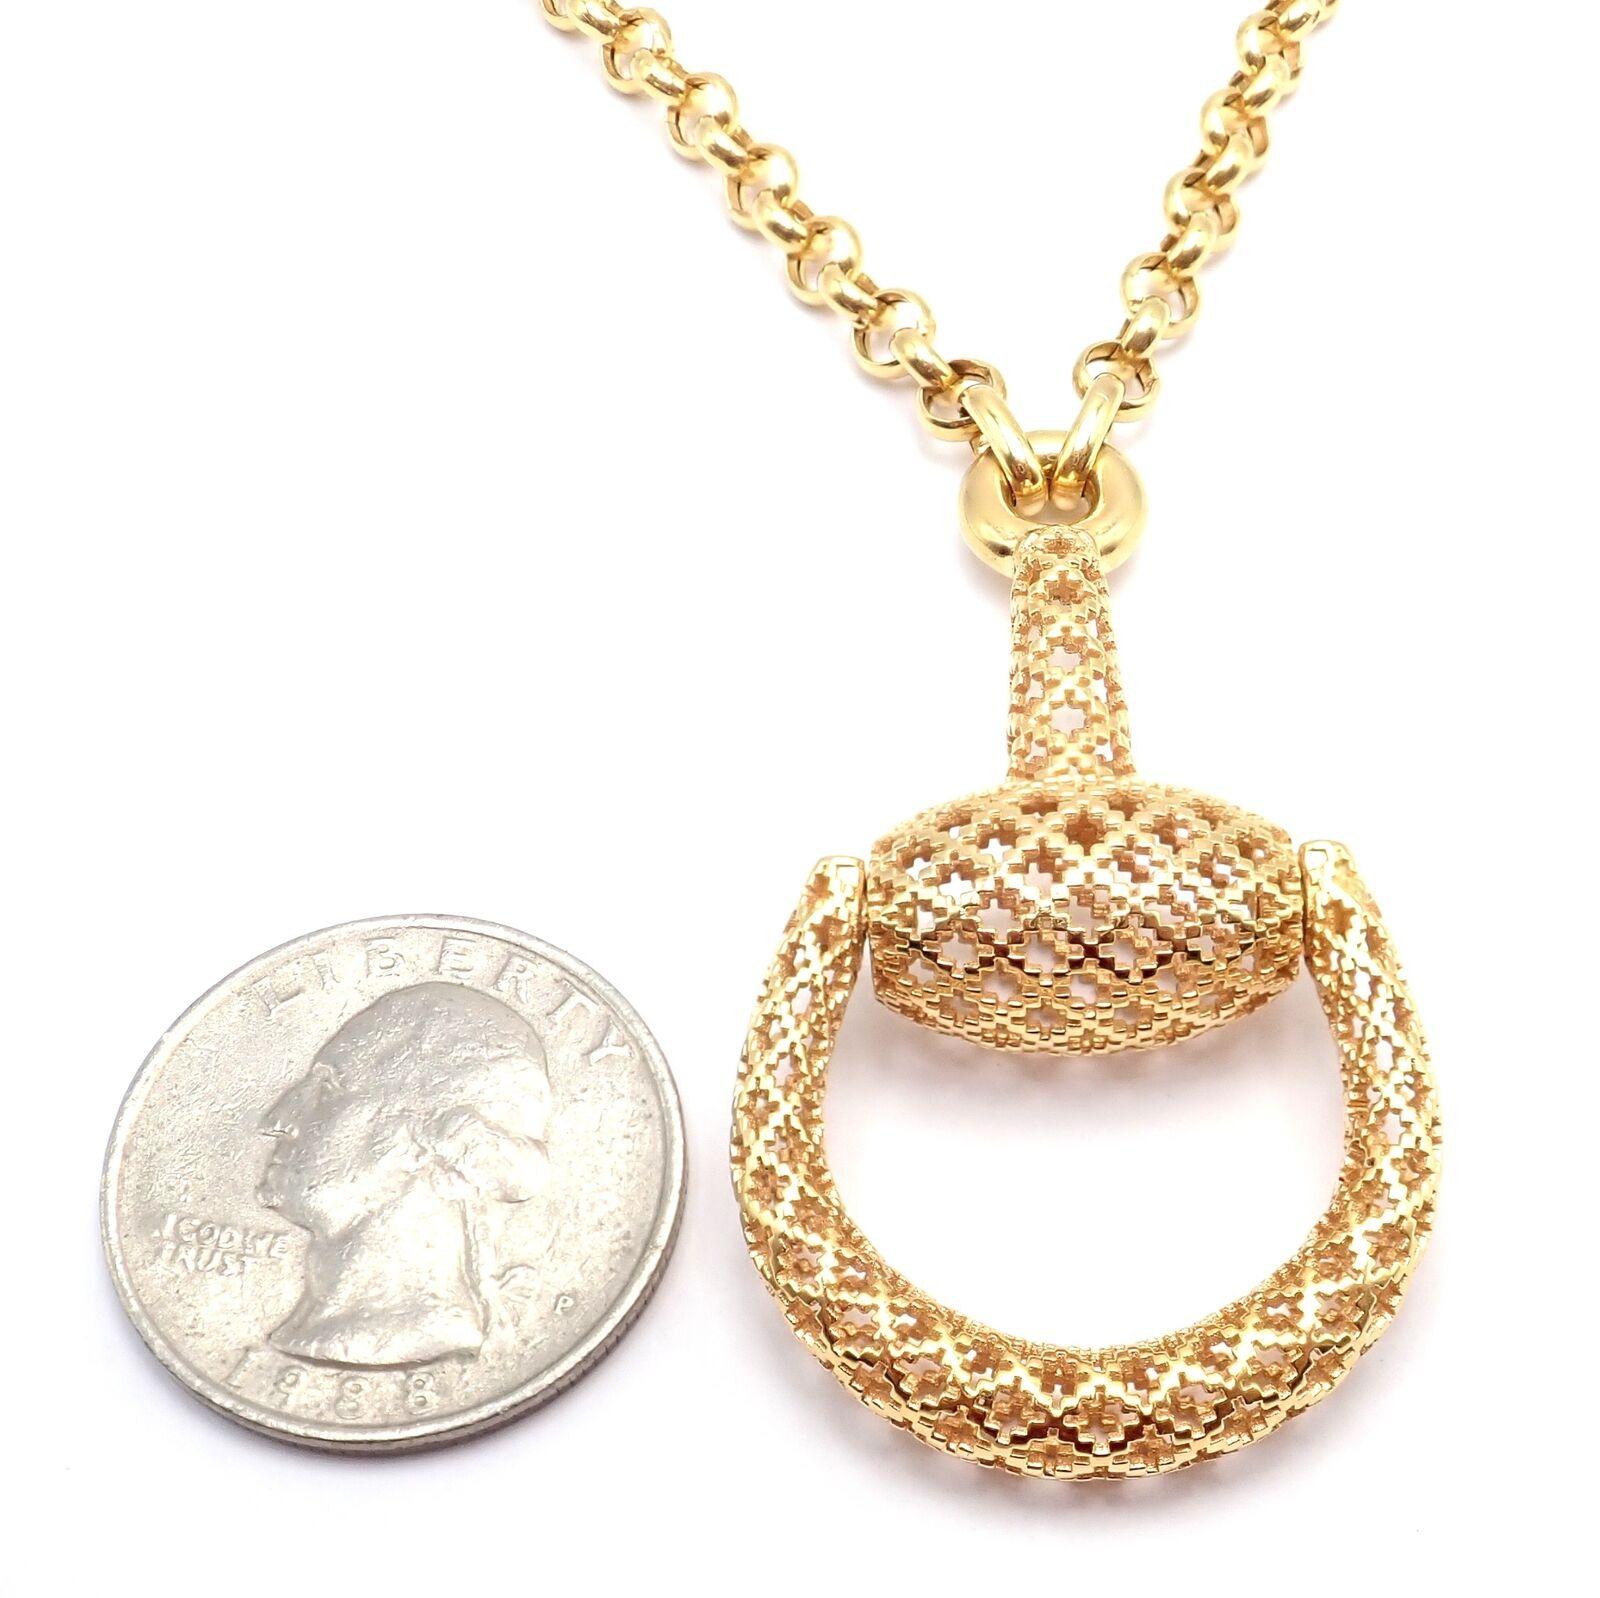 Gucci Large Horsebit Pendant Link Chain Necklace For Sale 4